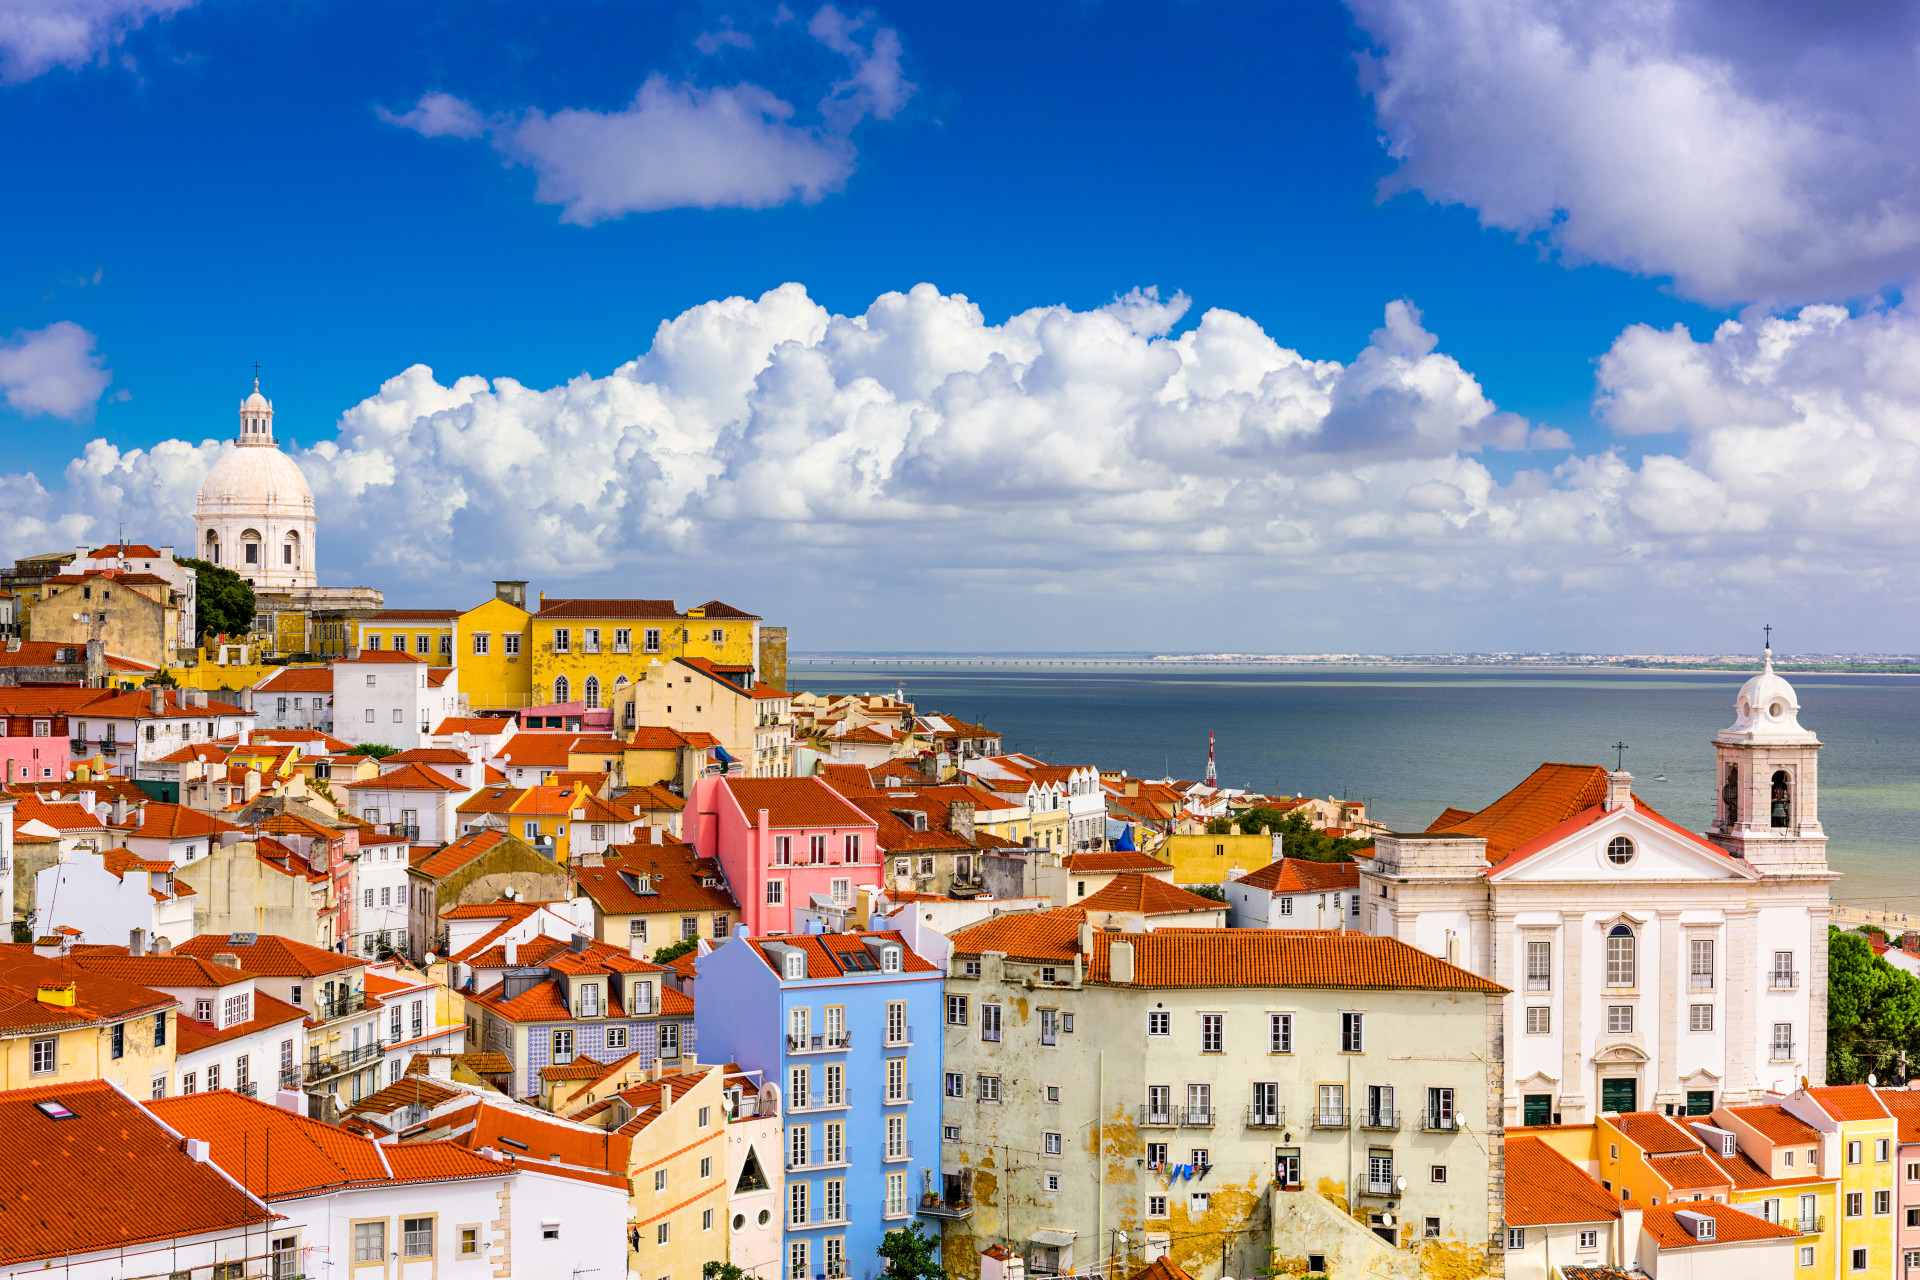 Colorée, segmentée en plusieurs quartiers typiques et atypiques, facilement accessible par les airs, la capitale portugaise est la destination phare pour faire le plein de vitamine D.<p><a href="https://www.msn.com/fr-fr/community/channel/vid-7xx8mnucu55yw63we9va2gwr7uihbxwc68fxqp25x6tg4ftibpra?cvid=94631541bc0f4f89bfd59158d696ad7e">Suivez-nous et accédez tous les jours à du contenu exclusif</a></p>